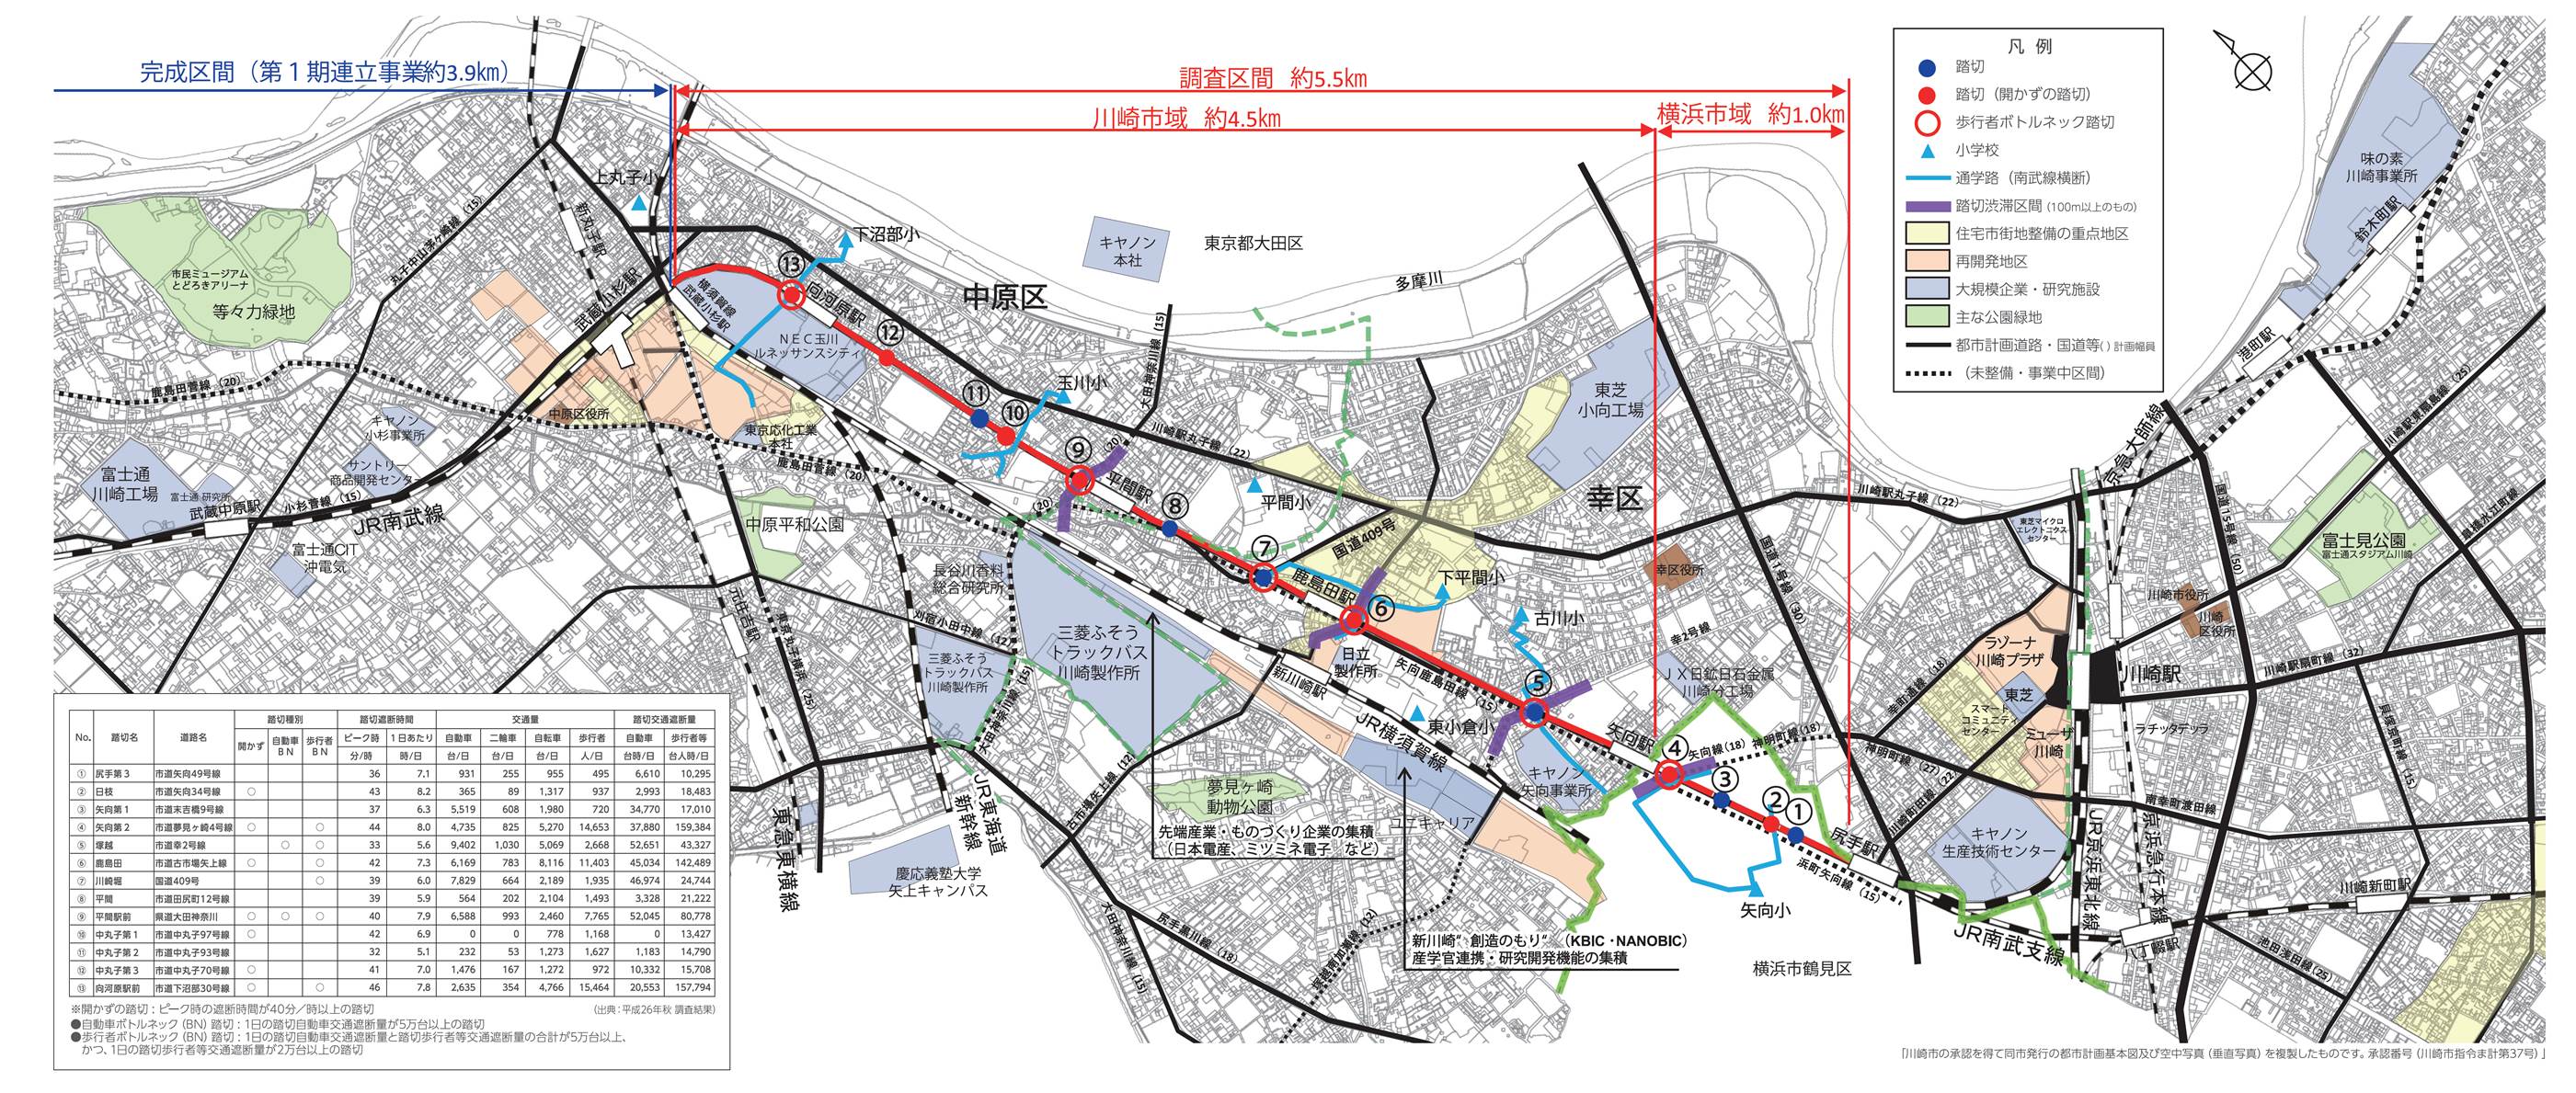 JR南武線連続立体交差事業区域図です